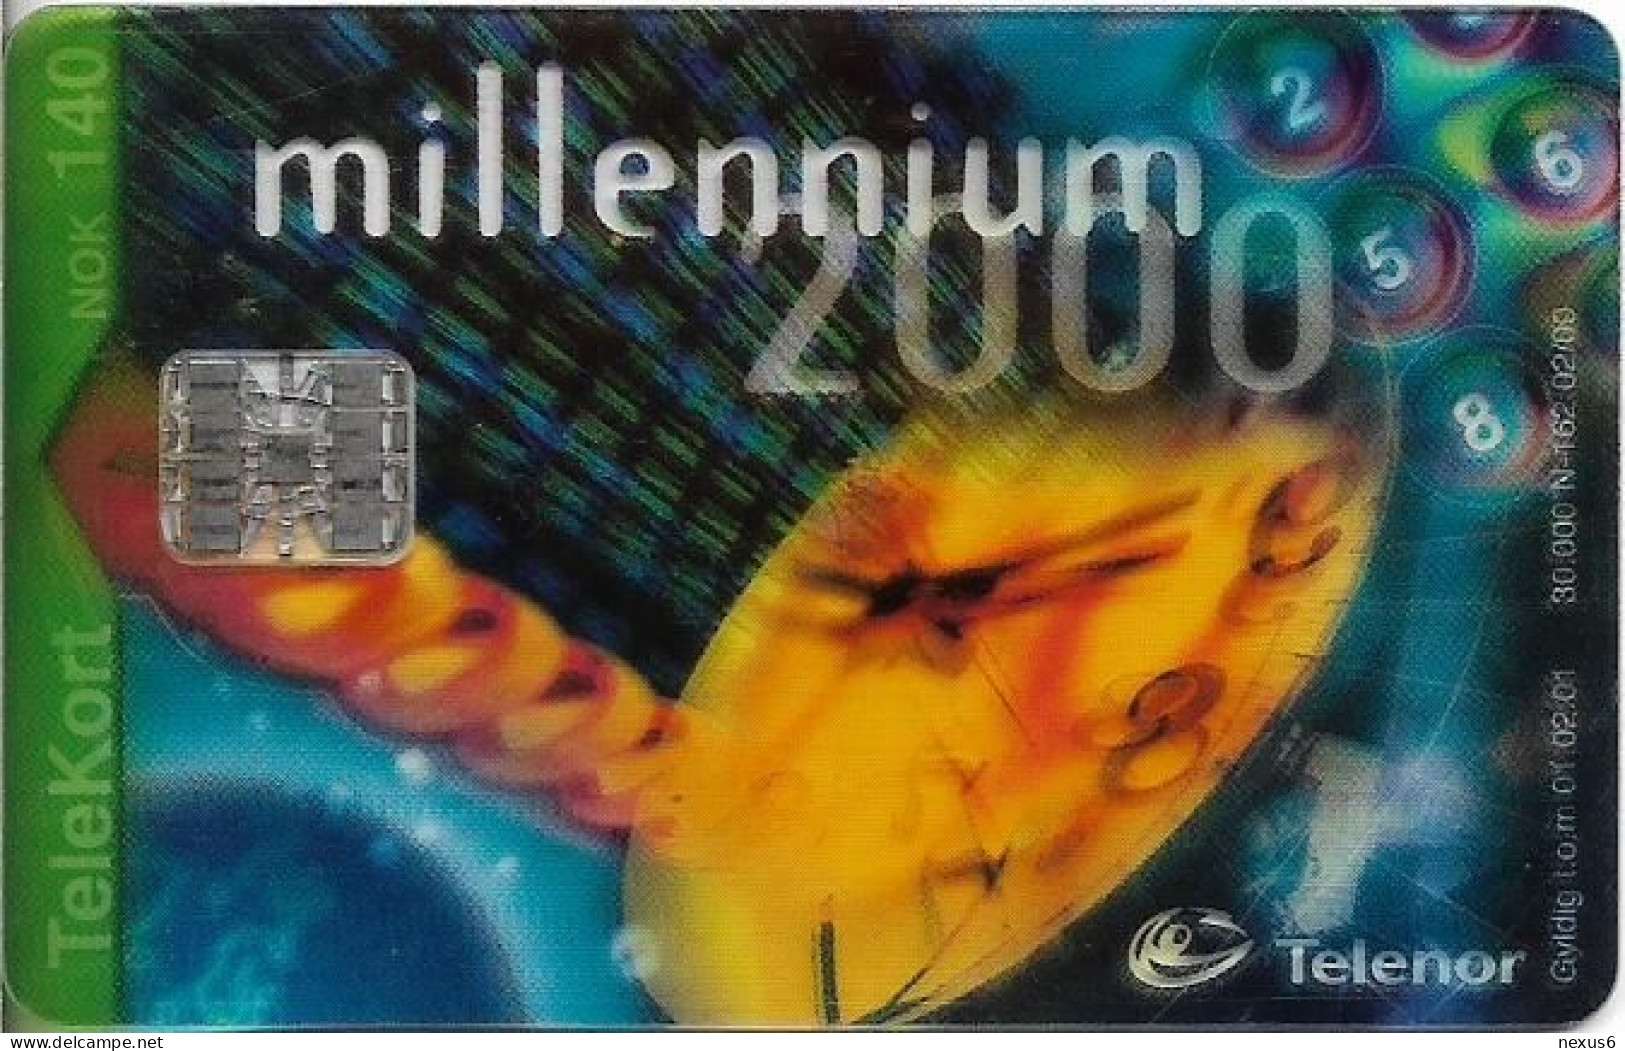 Norway - Telenor - Millennium 2000 (Transparent Card) - N-162 - 02.2000, 140U, 30.000ex, Used - Norvegia